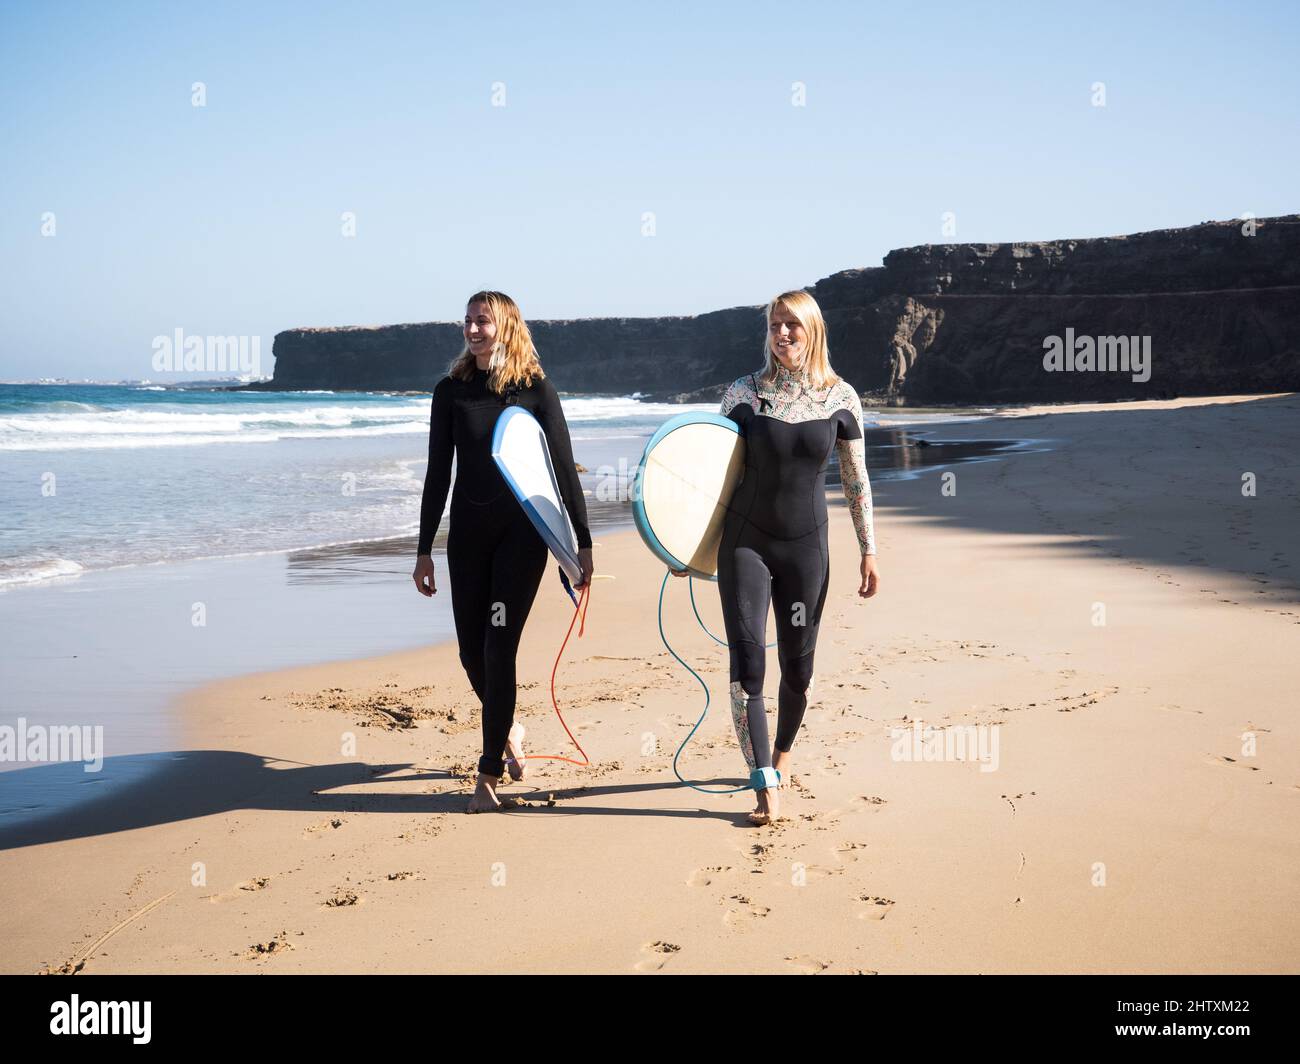 Surferinnen, die am Strand spazieren und auf die Wellen schauen Stockfoto